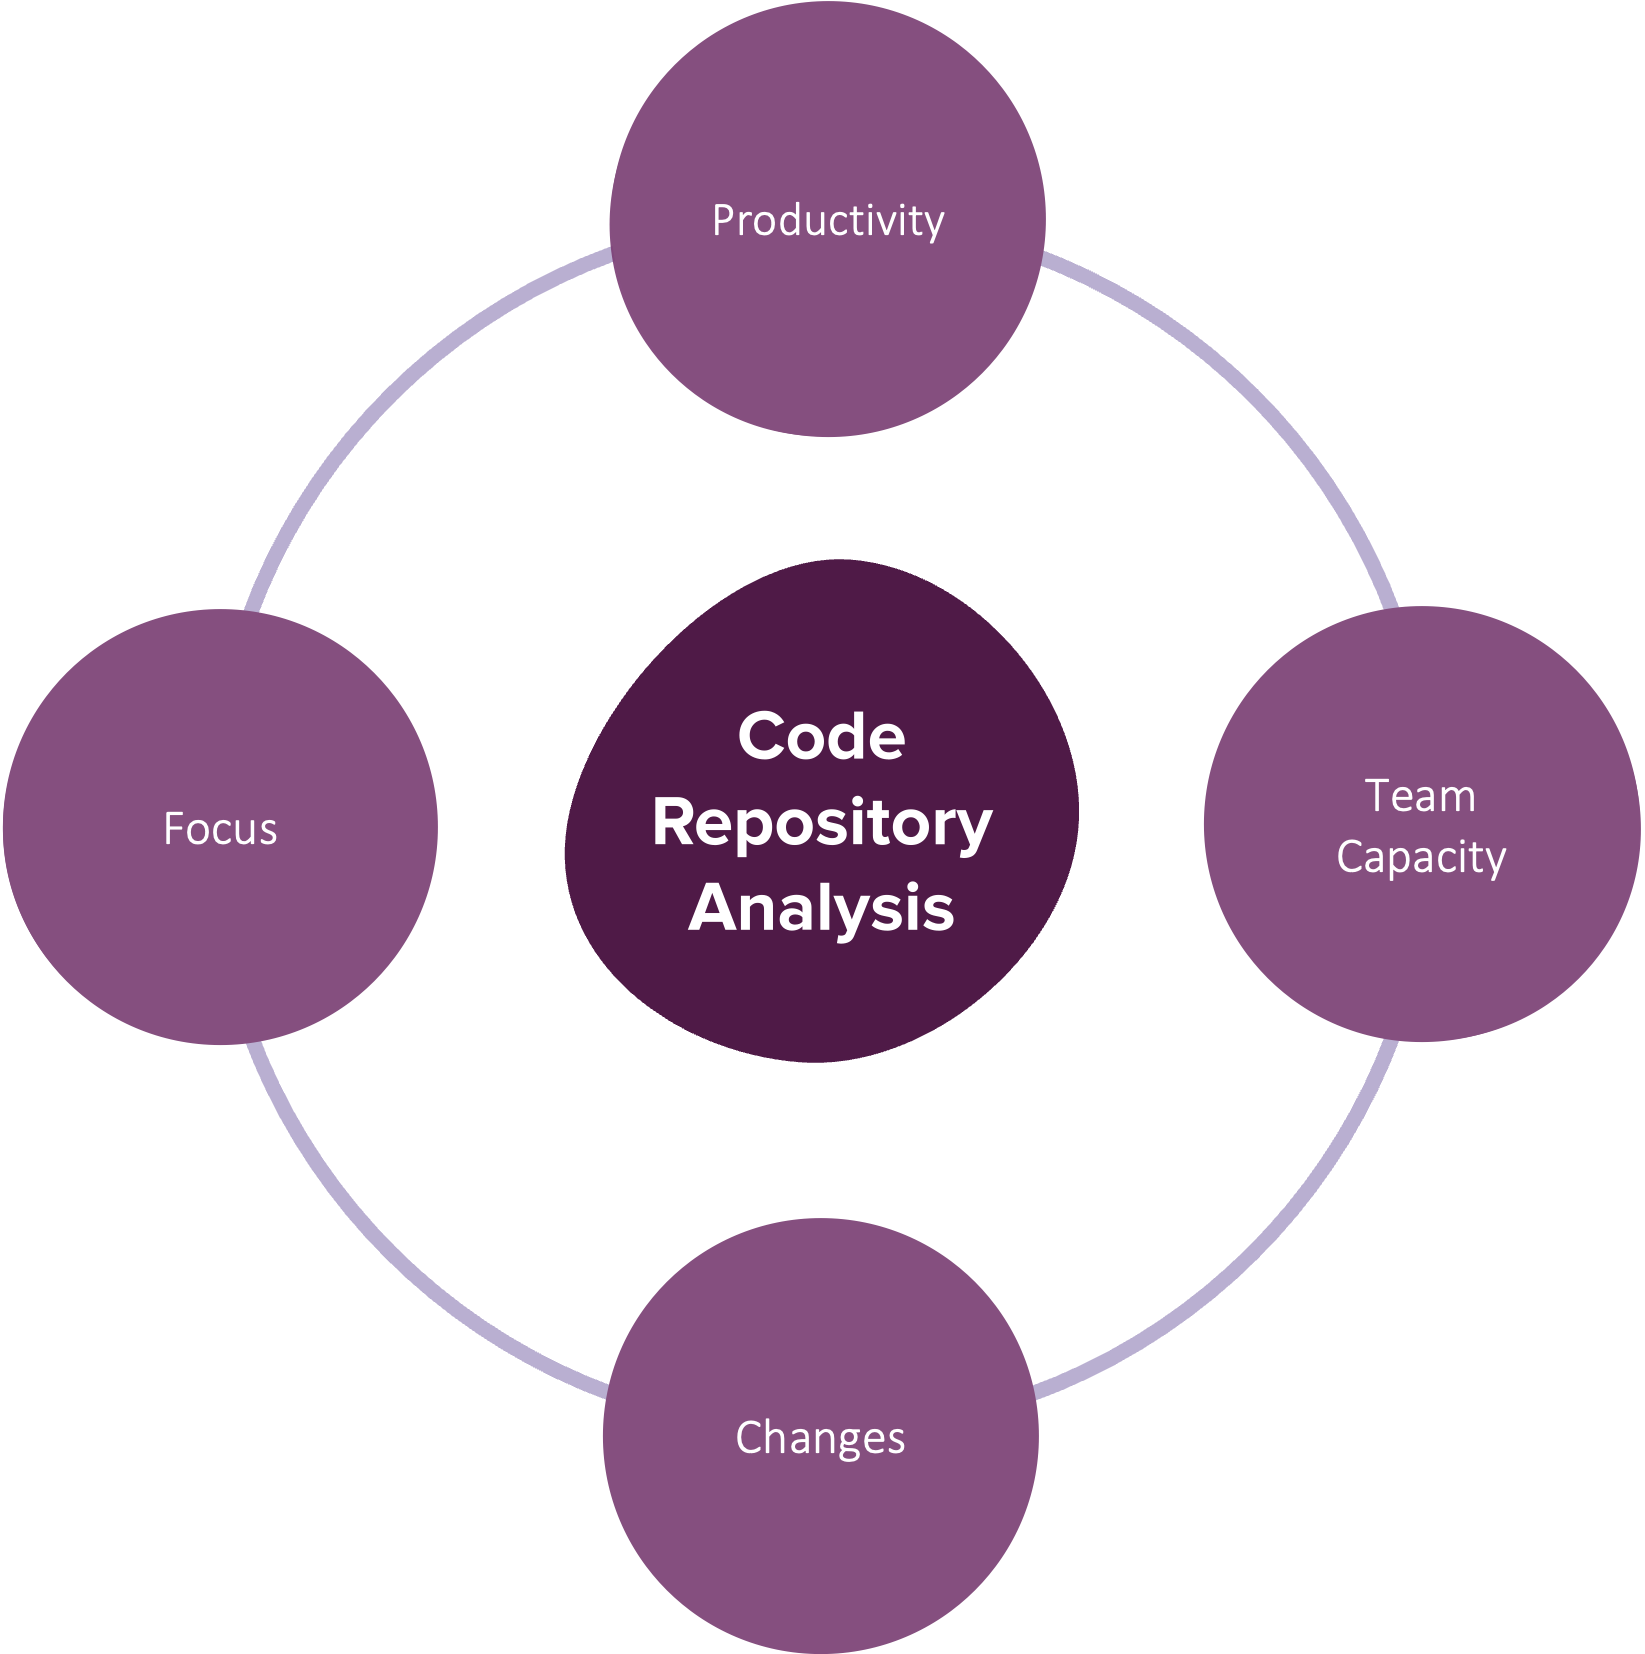 Code Repository Analysis